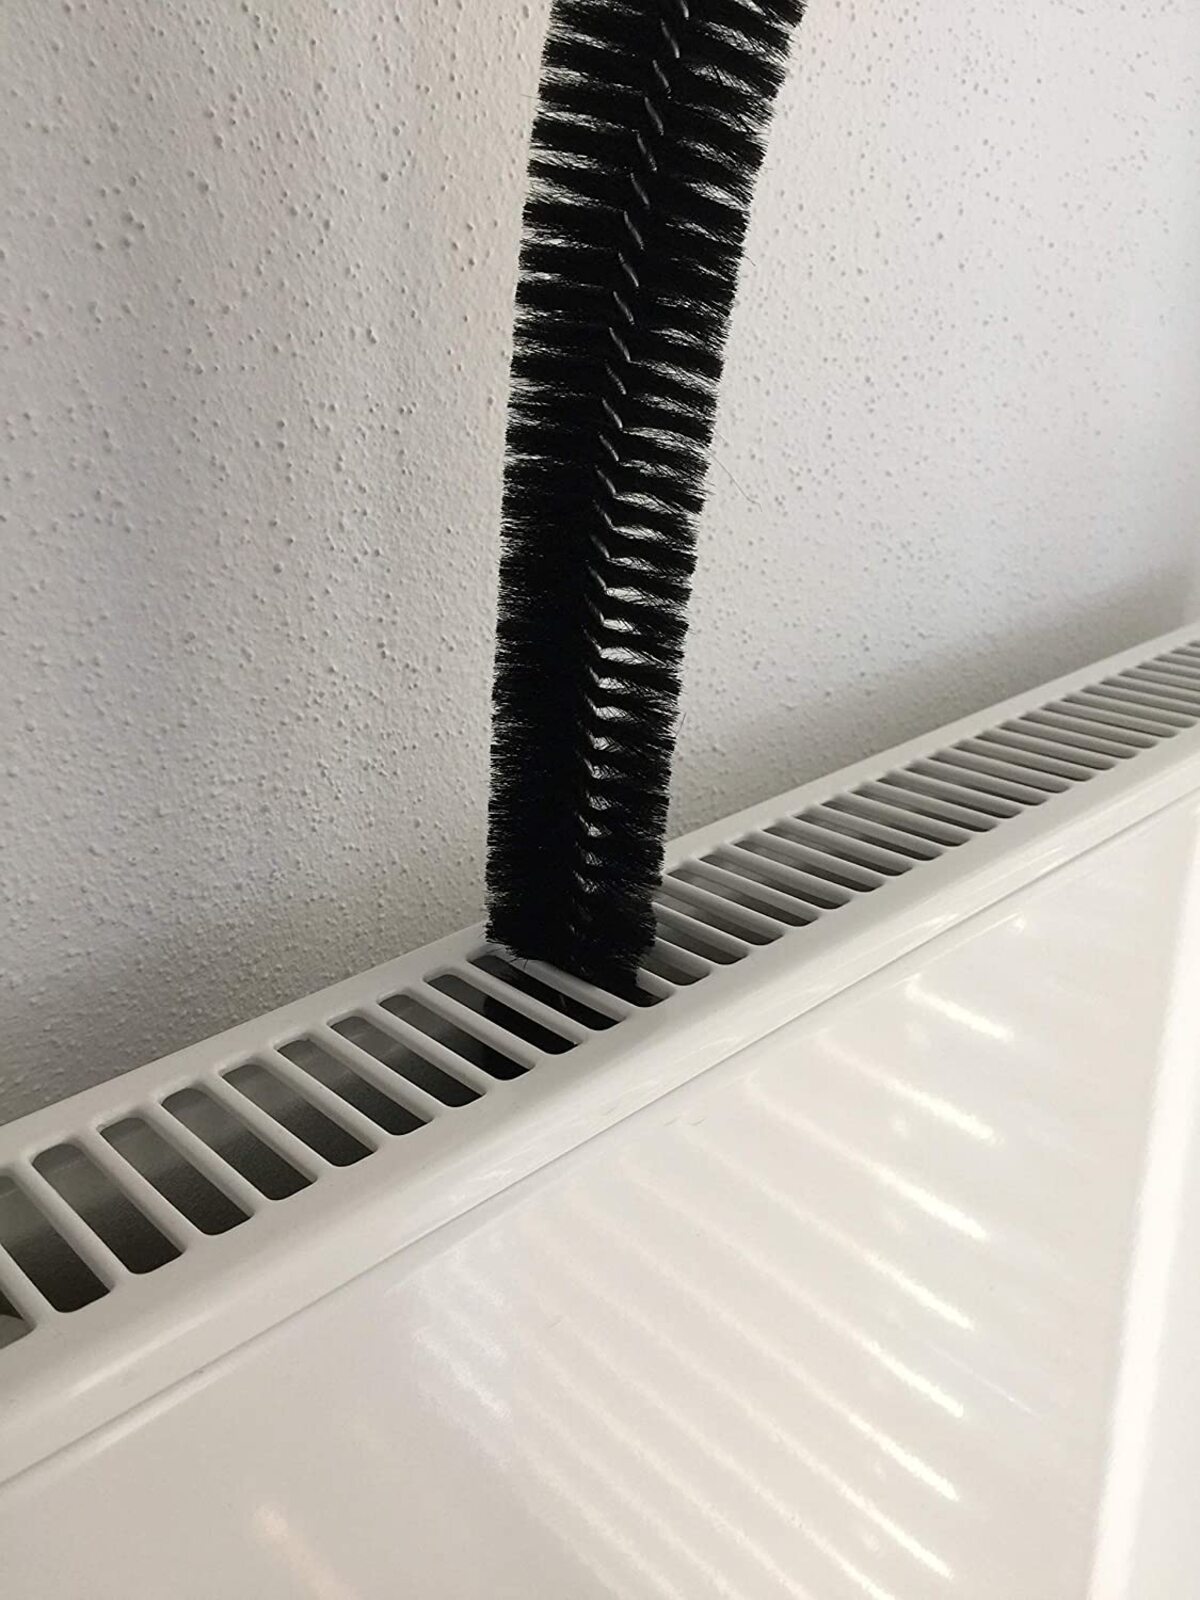 Este es el mejor cepillo para limpiar radiadores por dentro